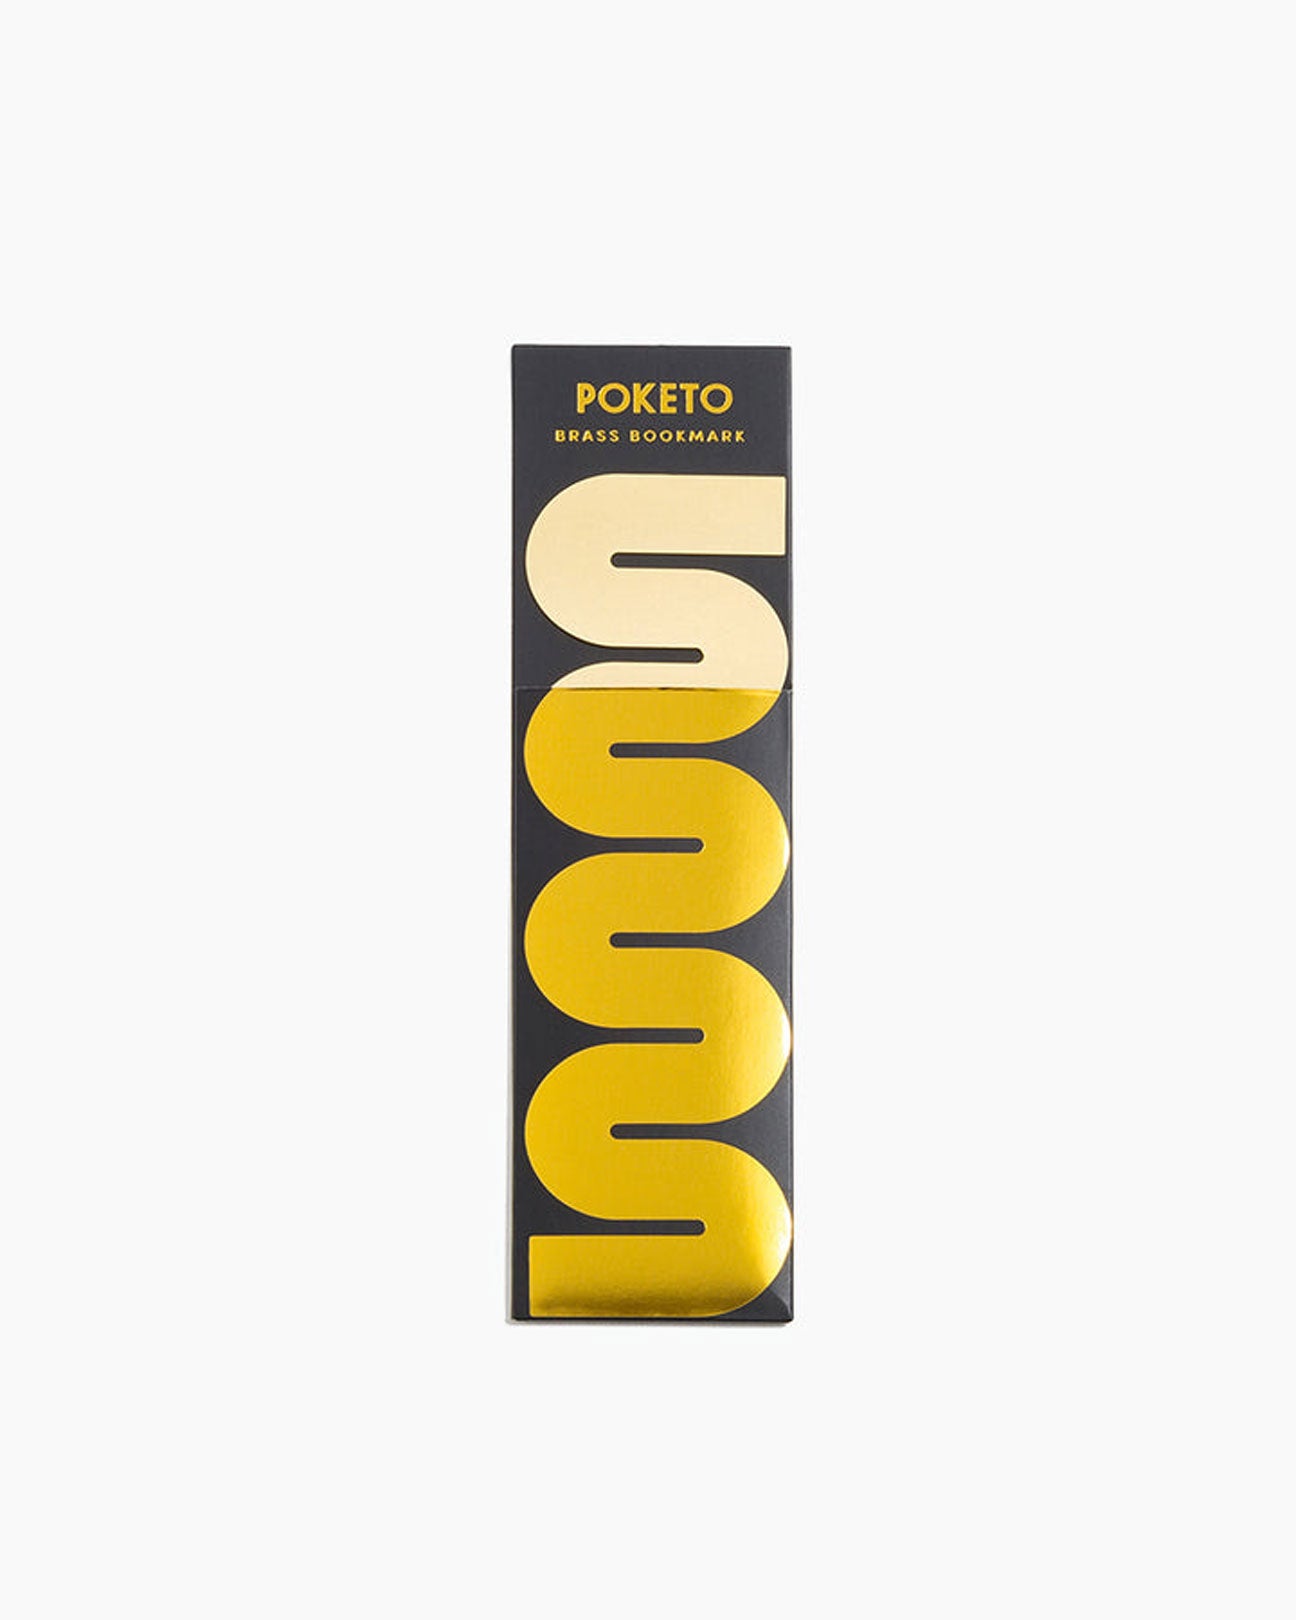 POKETO Brass Bookmark in Wave